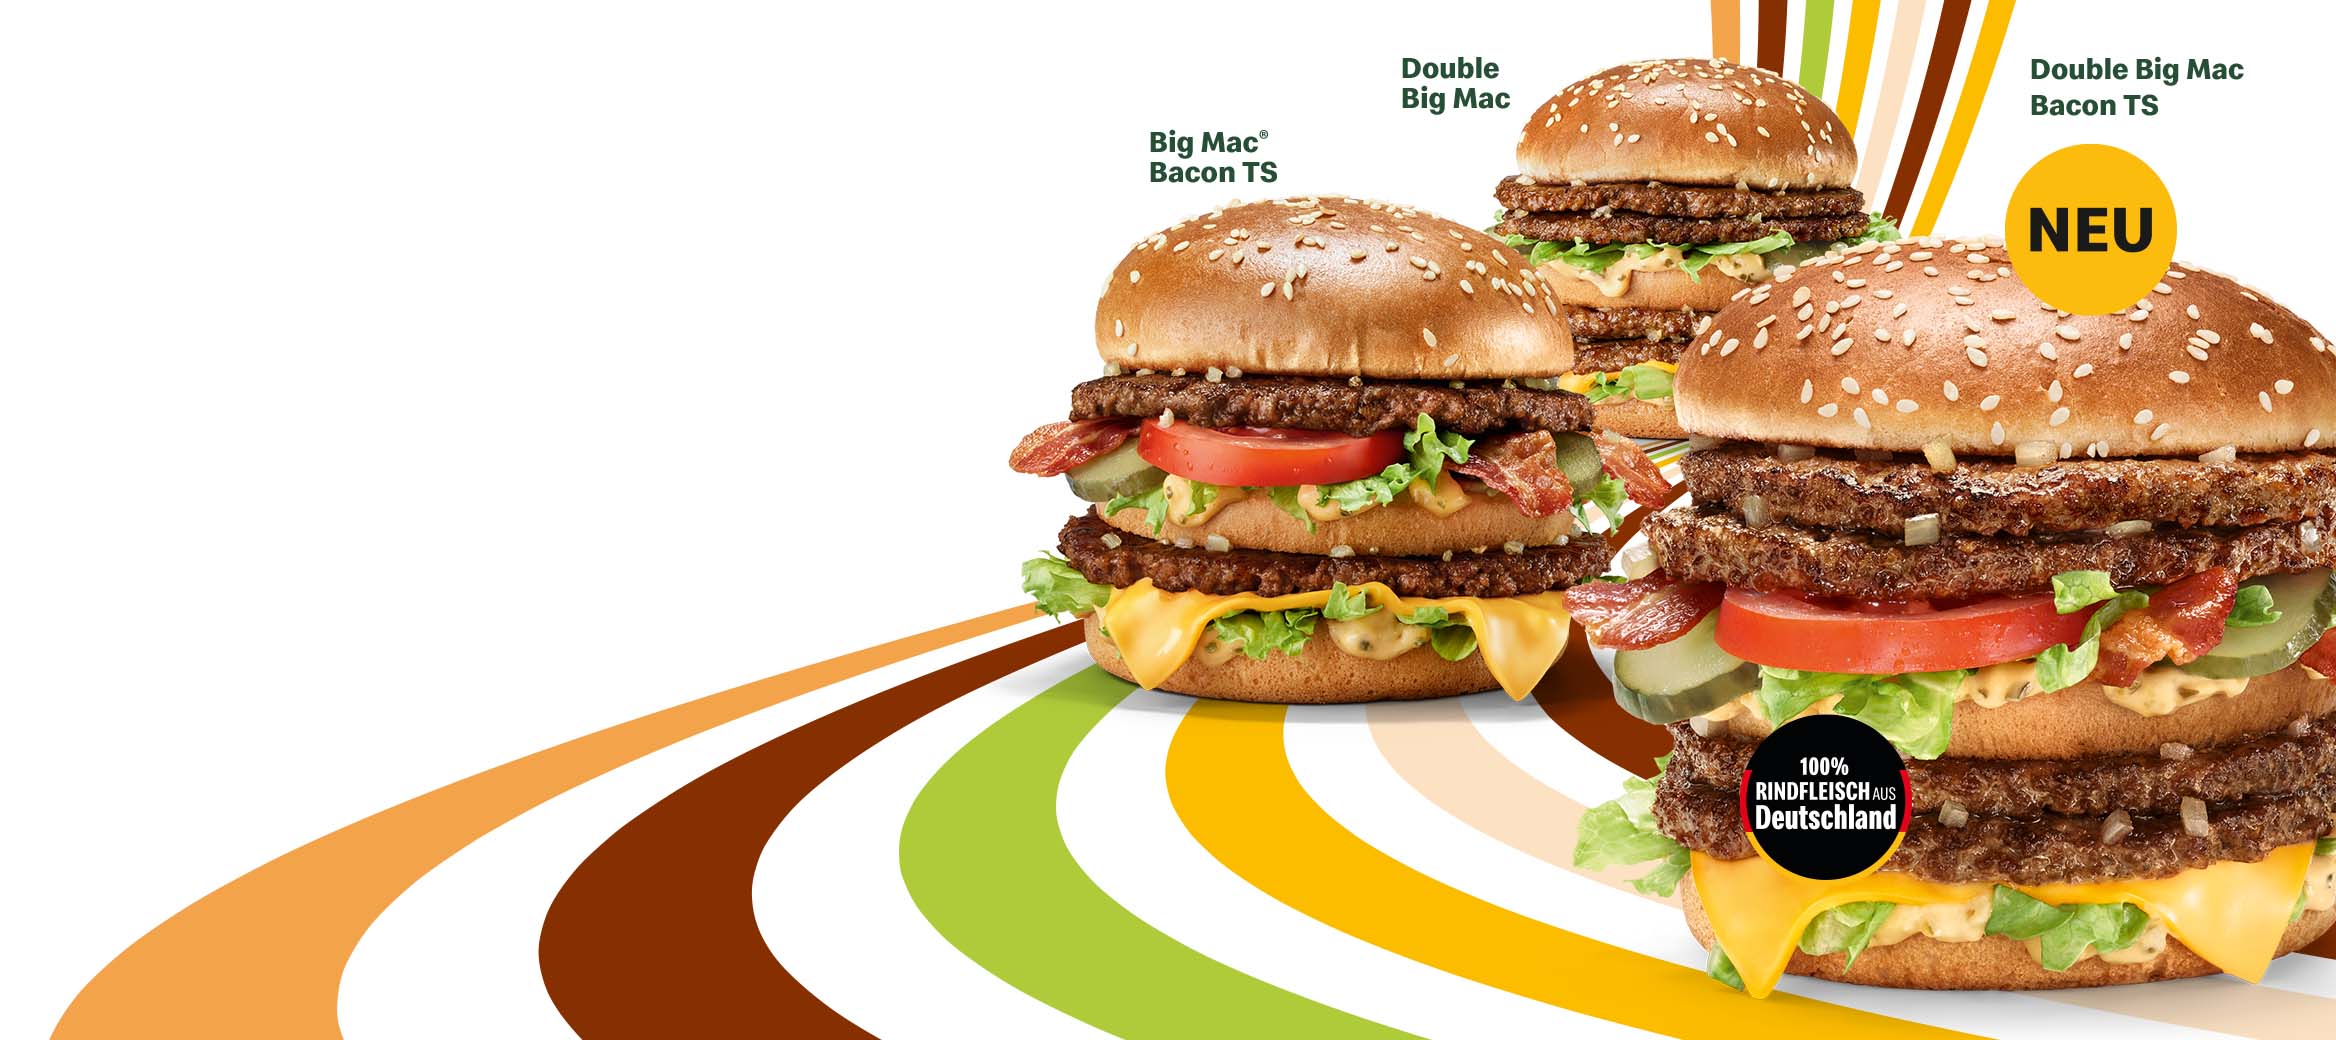 Der Double Big Mac, Big Mac® Bacon TS und Double Big Mac Bacon TS sind zu sehen. Ein Hinweis mit „100% Rindfleisch aus Deutschland“ ist abgebildet.